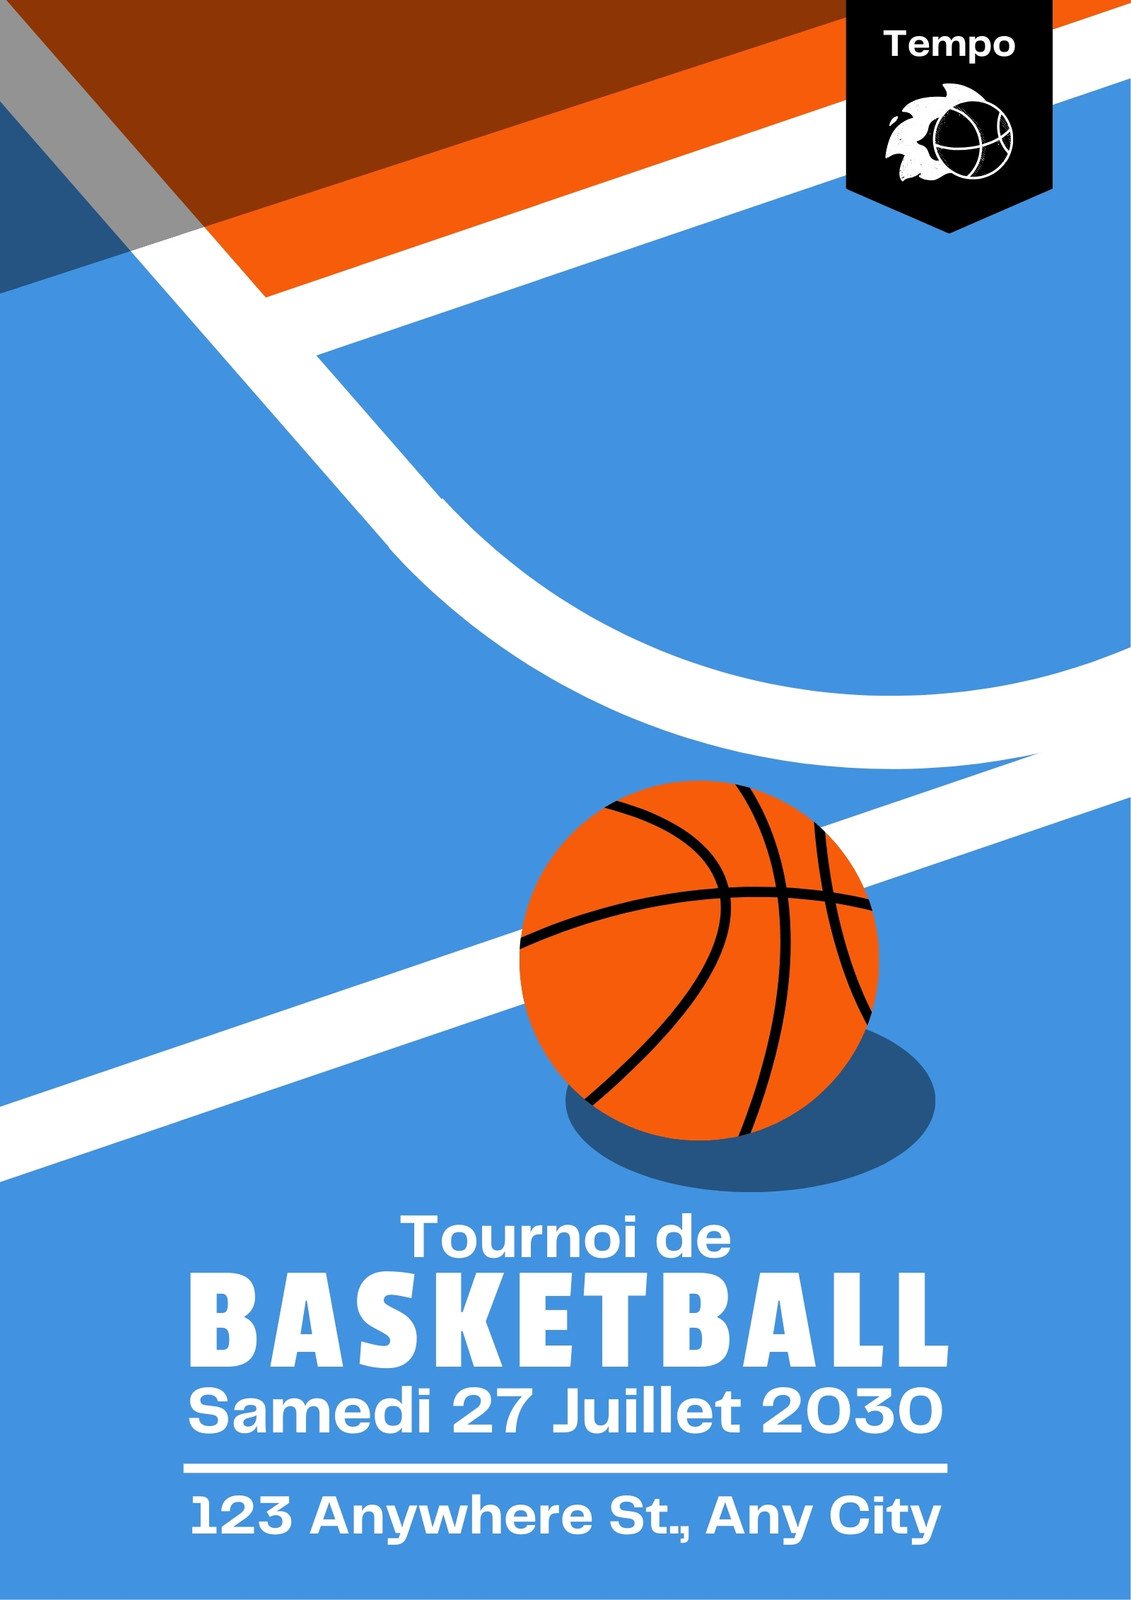 https://marketplace.canva.com/EAF3O8CJGl4/1/0/1131w/canva-affiche-%C3%A9v%C3%A9nement-sportif-tournoi-de-basketball-illustratif-g%C3%A9om%C3%A9trique-ftu6aUGihYc.jpg